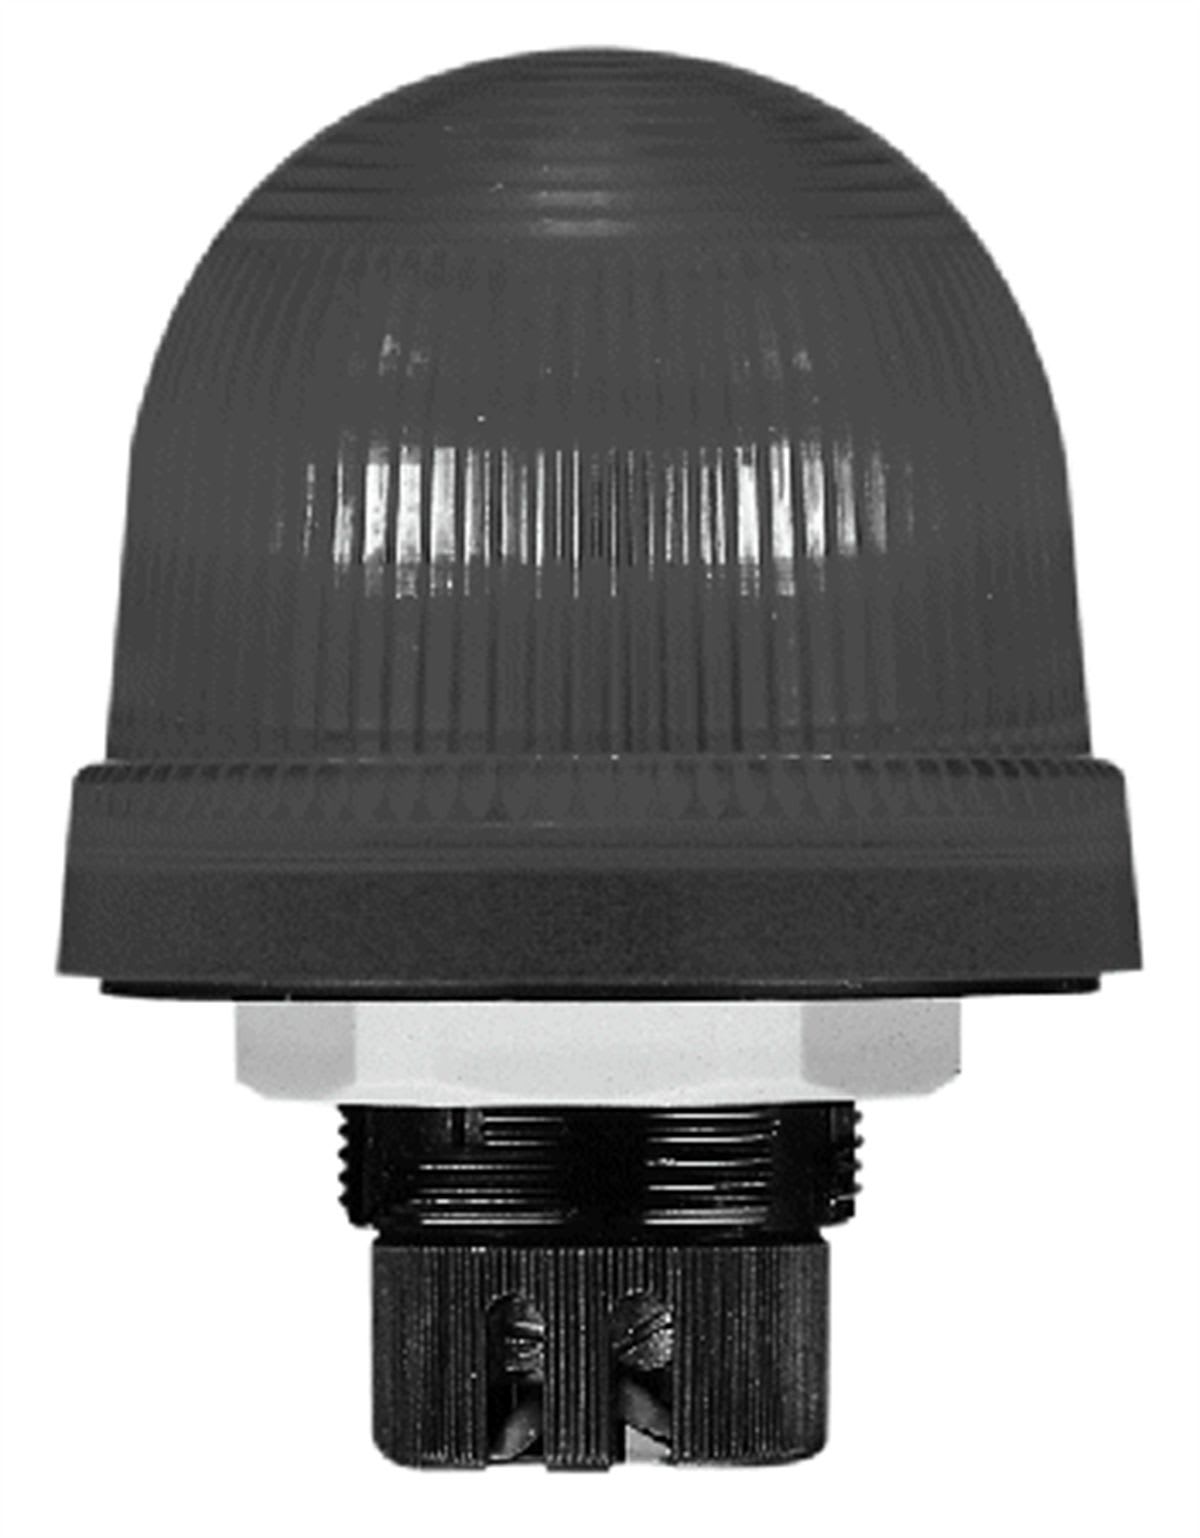 POMPES GRUNDFOS DISTRIBUTION SA - LAMPE 220V (ALARME)